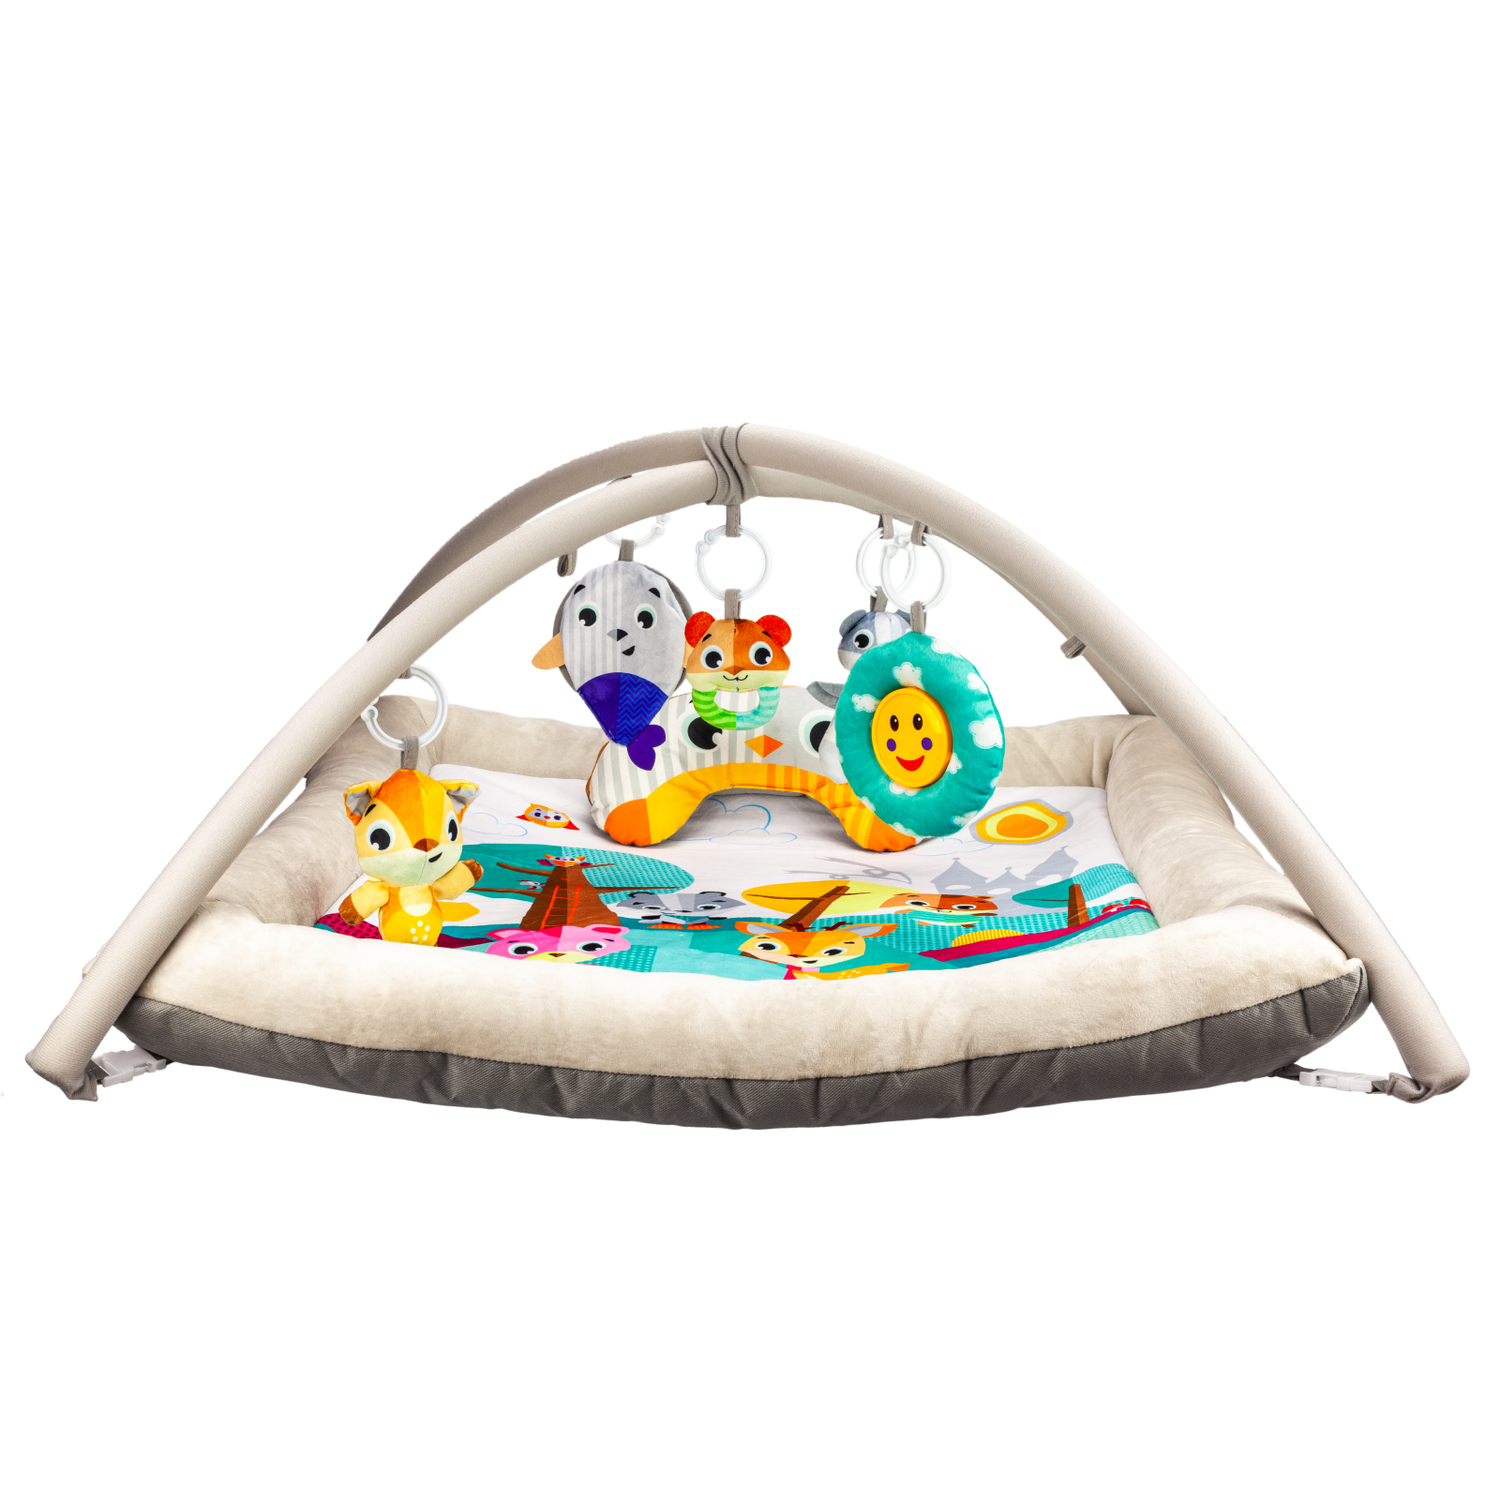 Развивающий игровой коврик Solmax для новорожденных с дугой и игрушками бежевый/голубой - фото 4